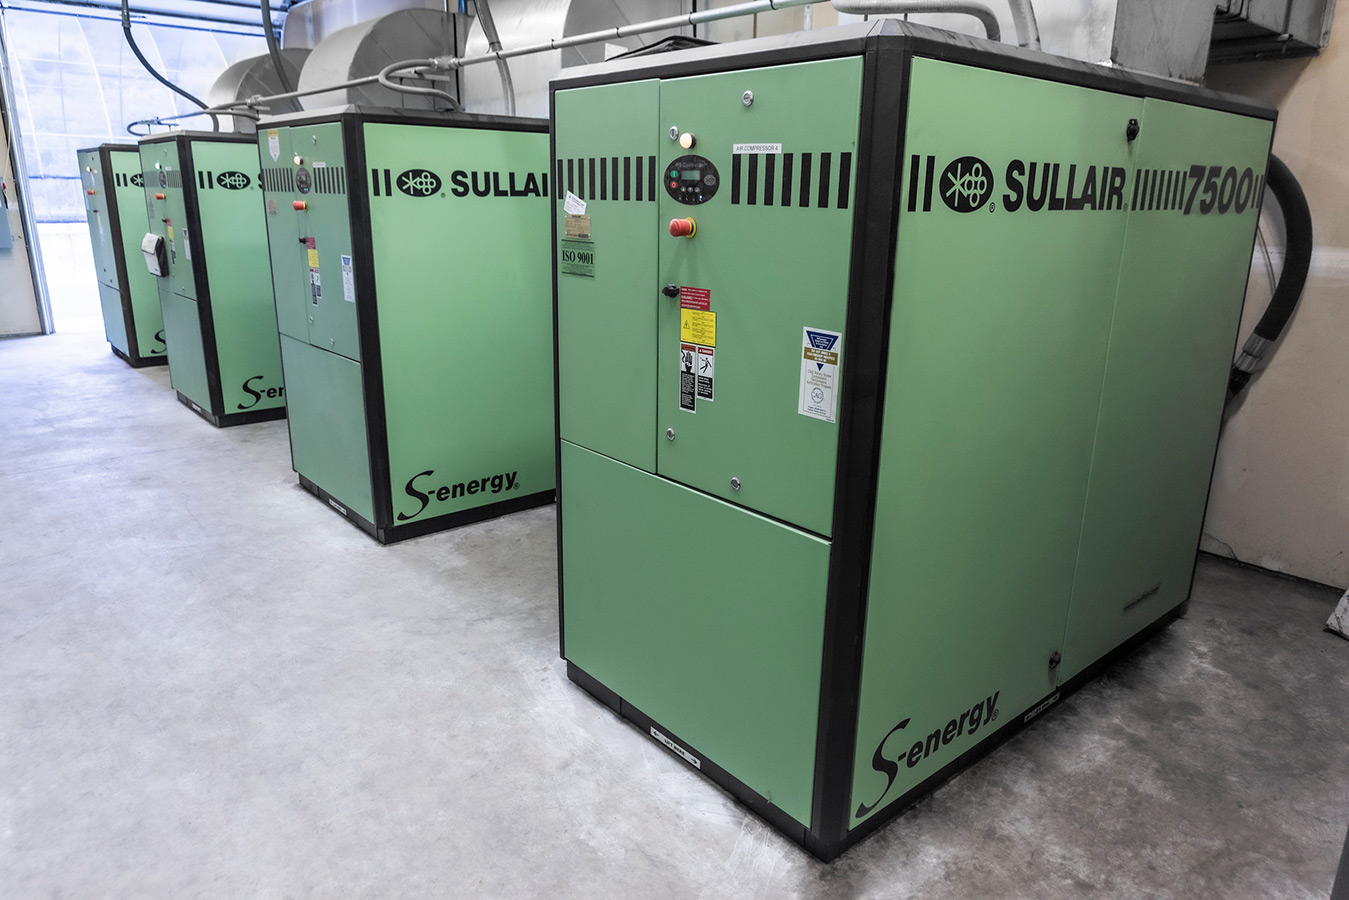 Installation d’un compresseur industriel Sullair S-energy 7500